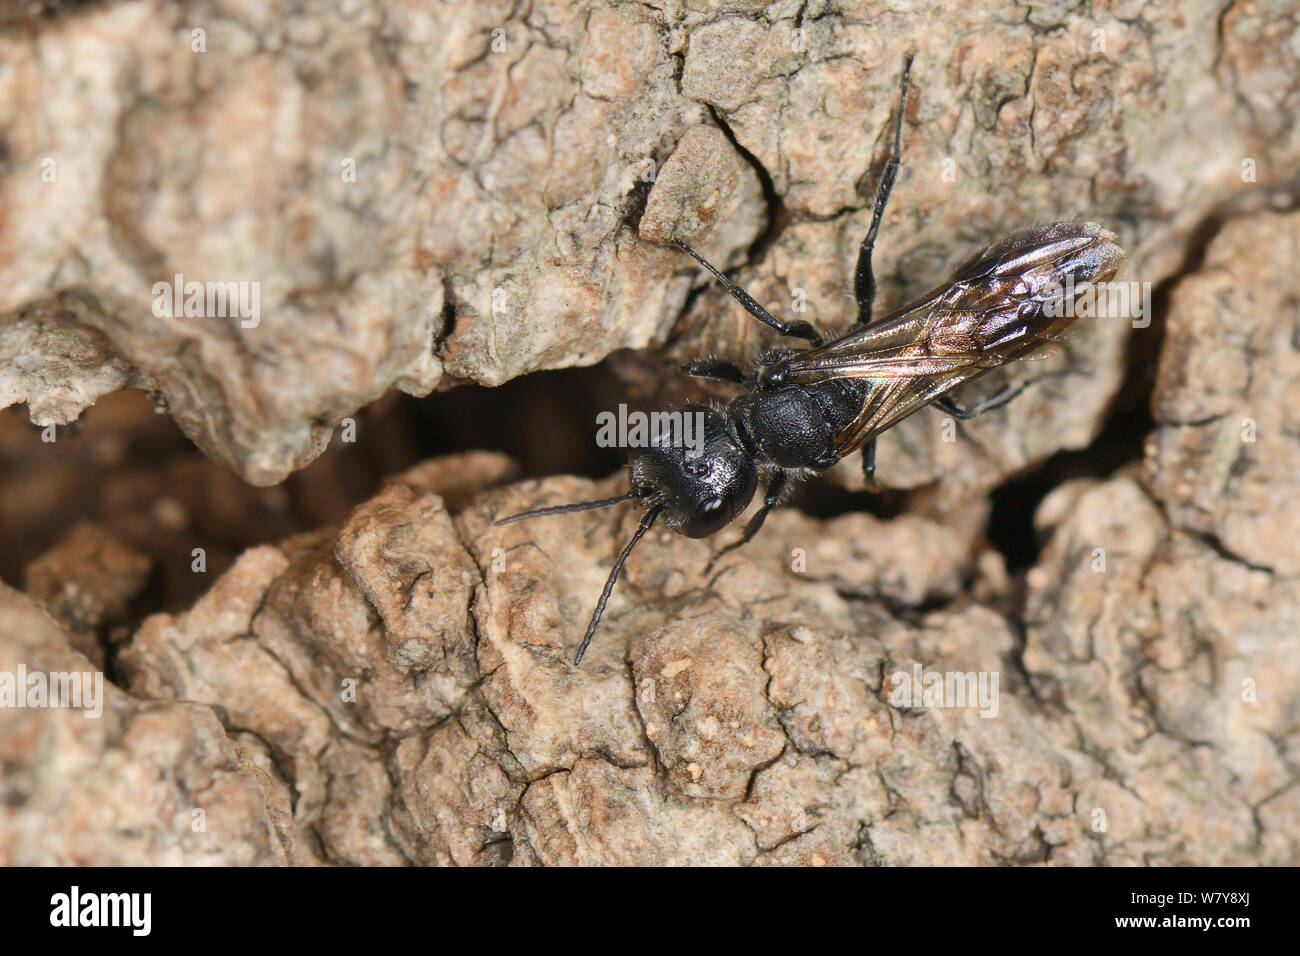 Afide wasp / sphecid wasp Pemphredon (sp) tornando a nido burrow i morti in legno di quercia base, Gloucestershire, Regno Unito, ottobre. Foto Stock